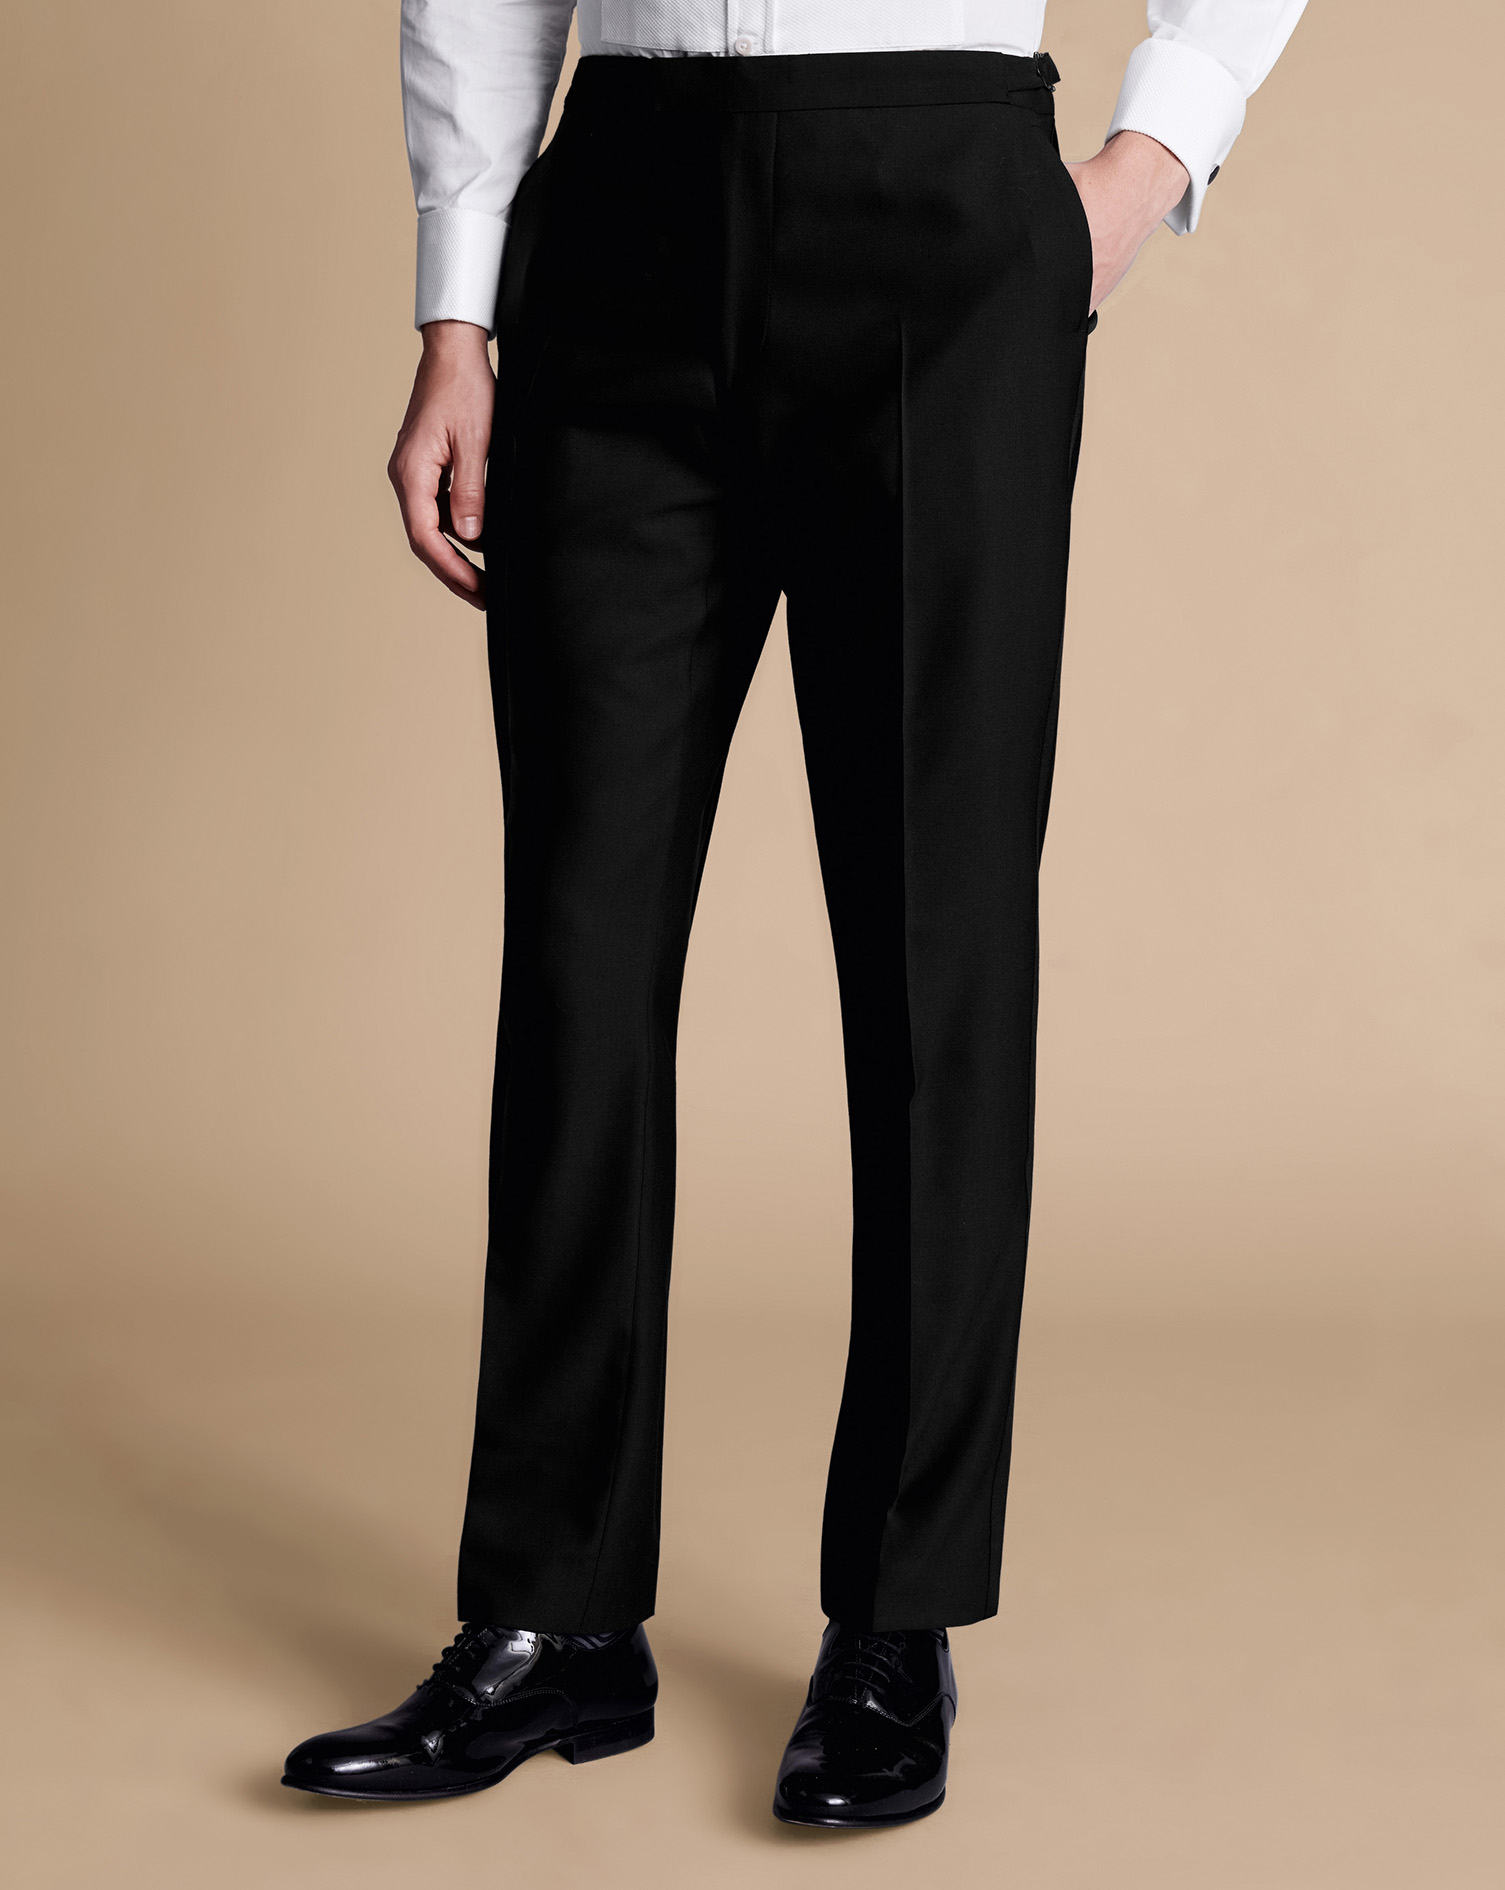 Men's Charles Tyrwhitt Dinner Suit Trousers - Black Size 36/38 Wool
